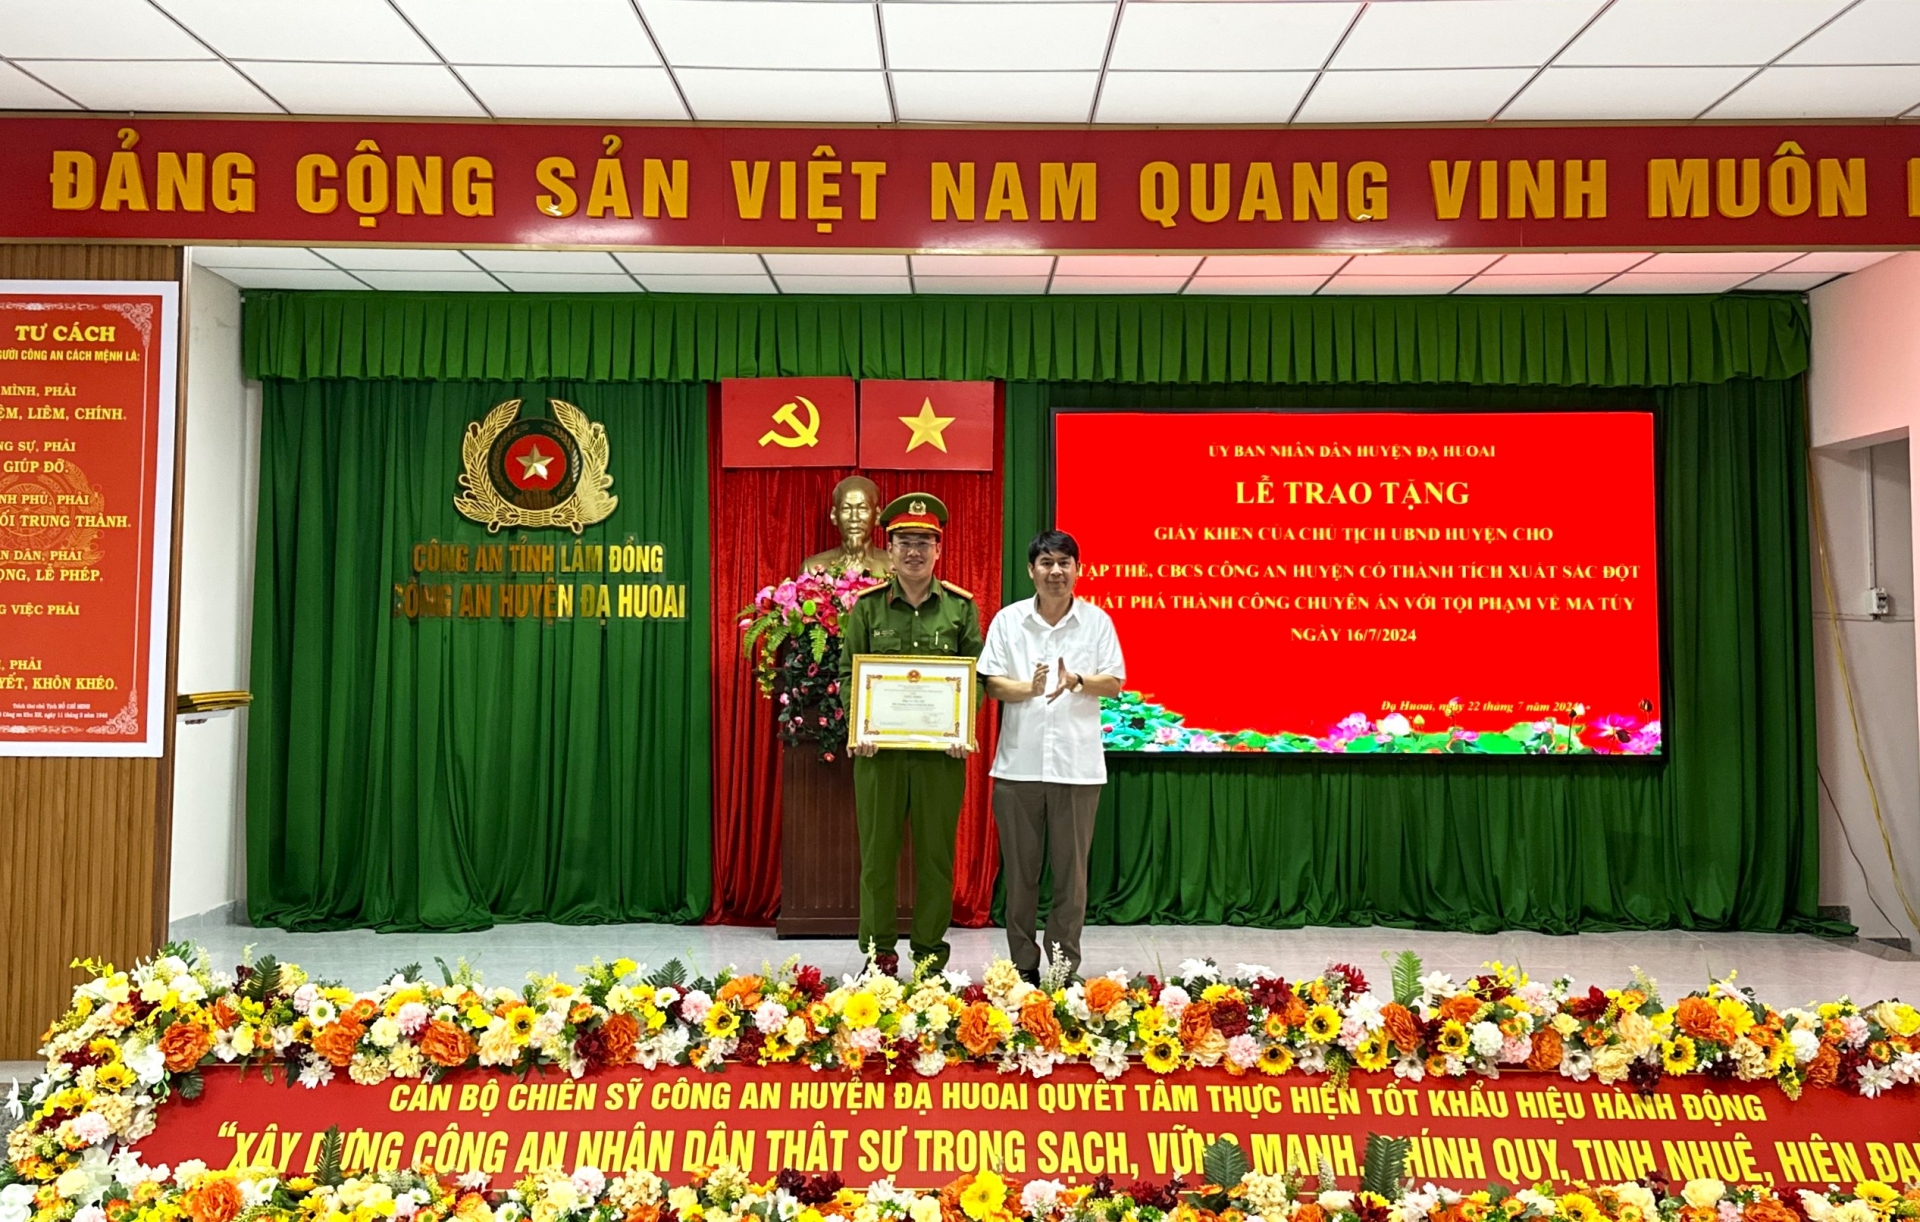 Chủ tịch UBND huyện Đạ Huoai Lê Bình Minh trao giấy khen và thưởng nóng Công an huyện Đạ Huoai 10 triệu đồng vì đã có thành tích xuất sắc phá thành công chuyên án ma túy